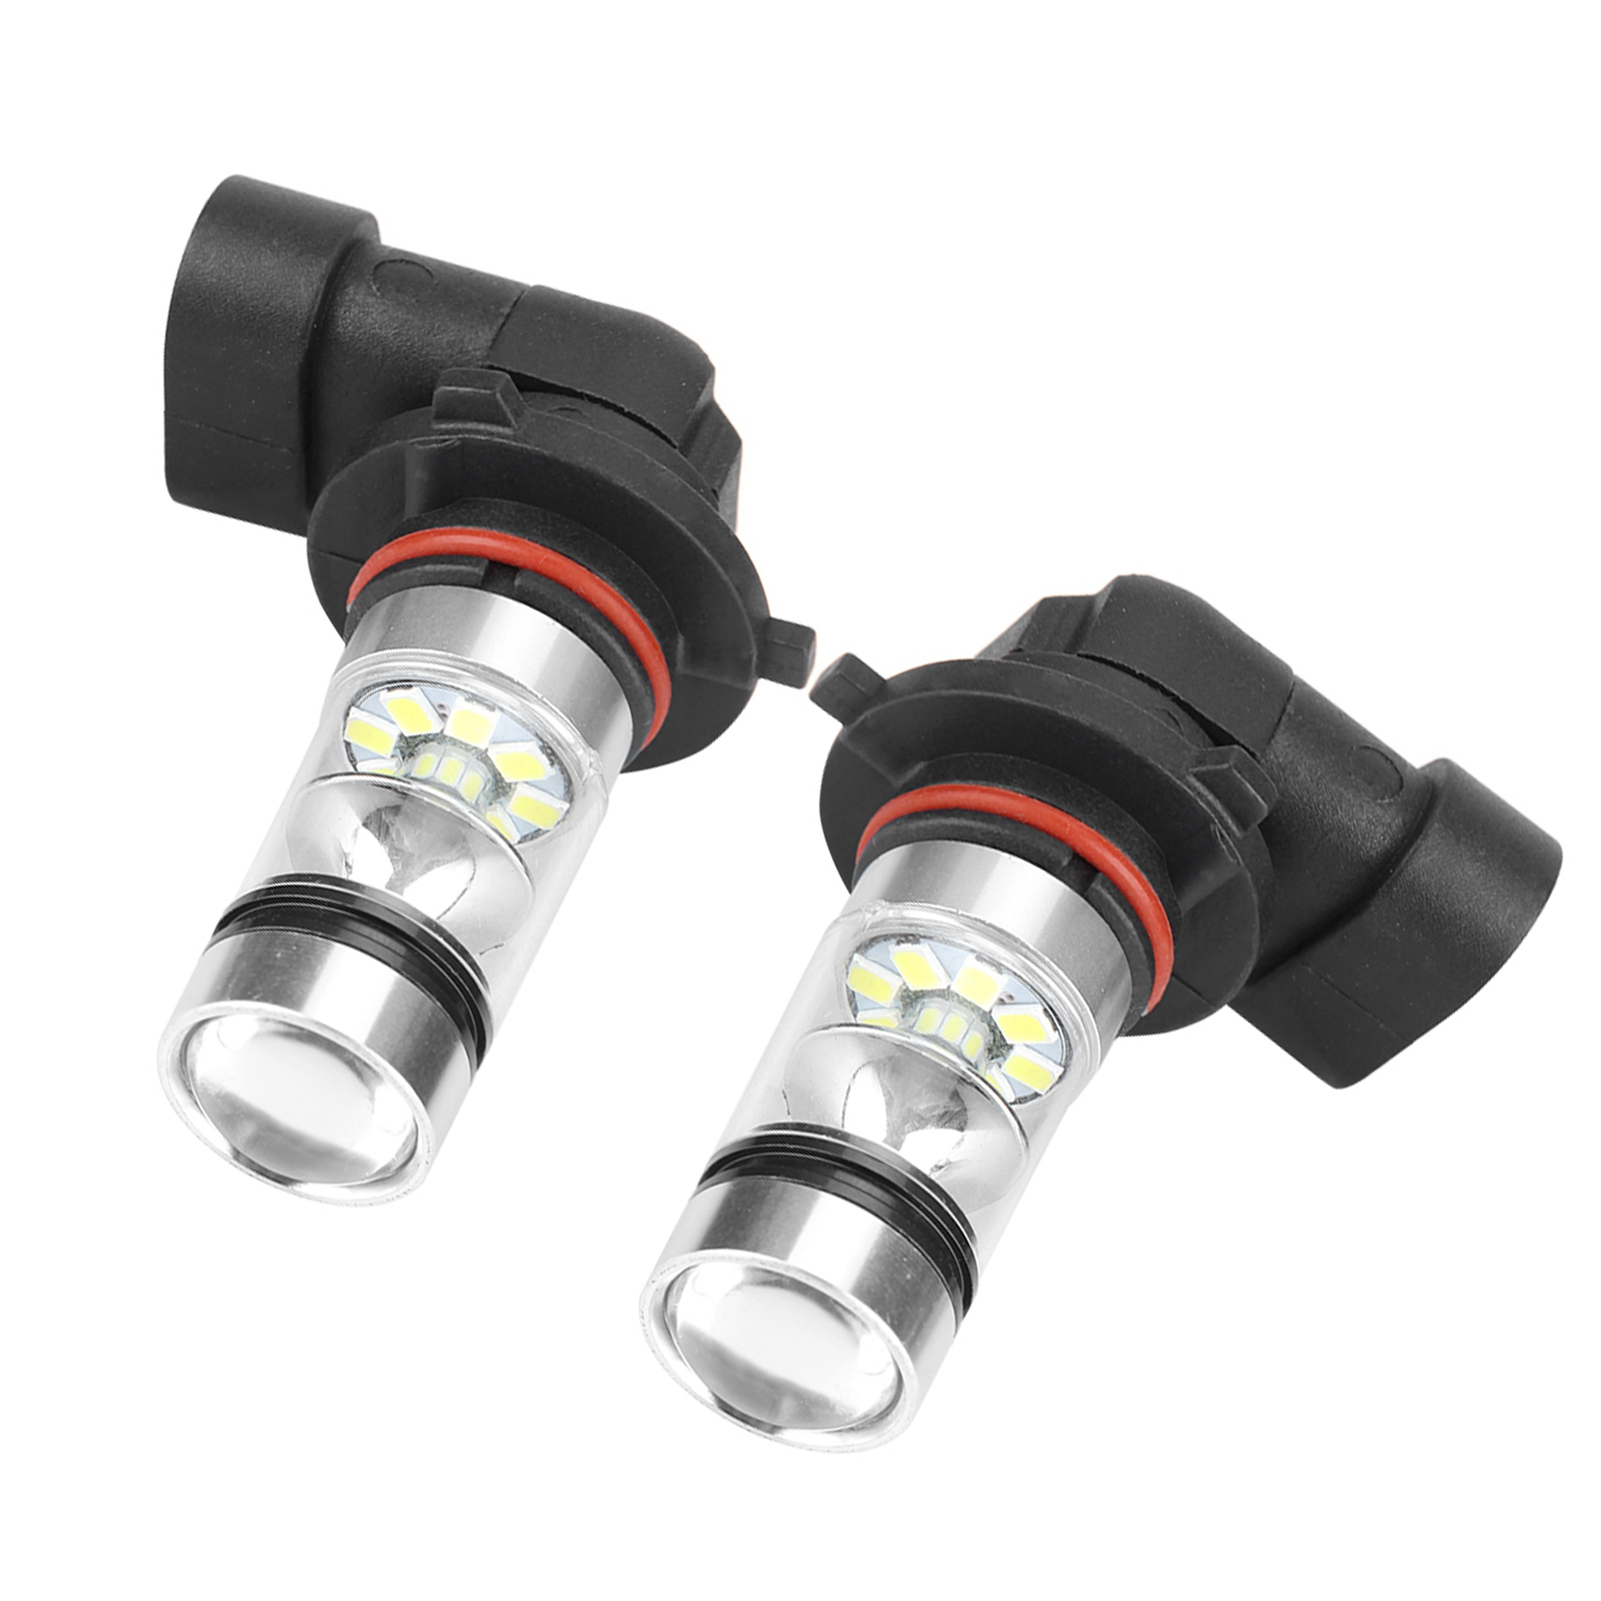 2 pièces 9006 / HB4 100W blanc LED haute luminosité phare ampoules Kit antibrouillard voiture conduite lampe-8991082669624